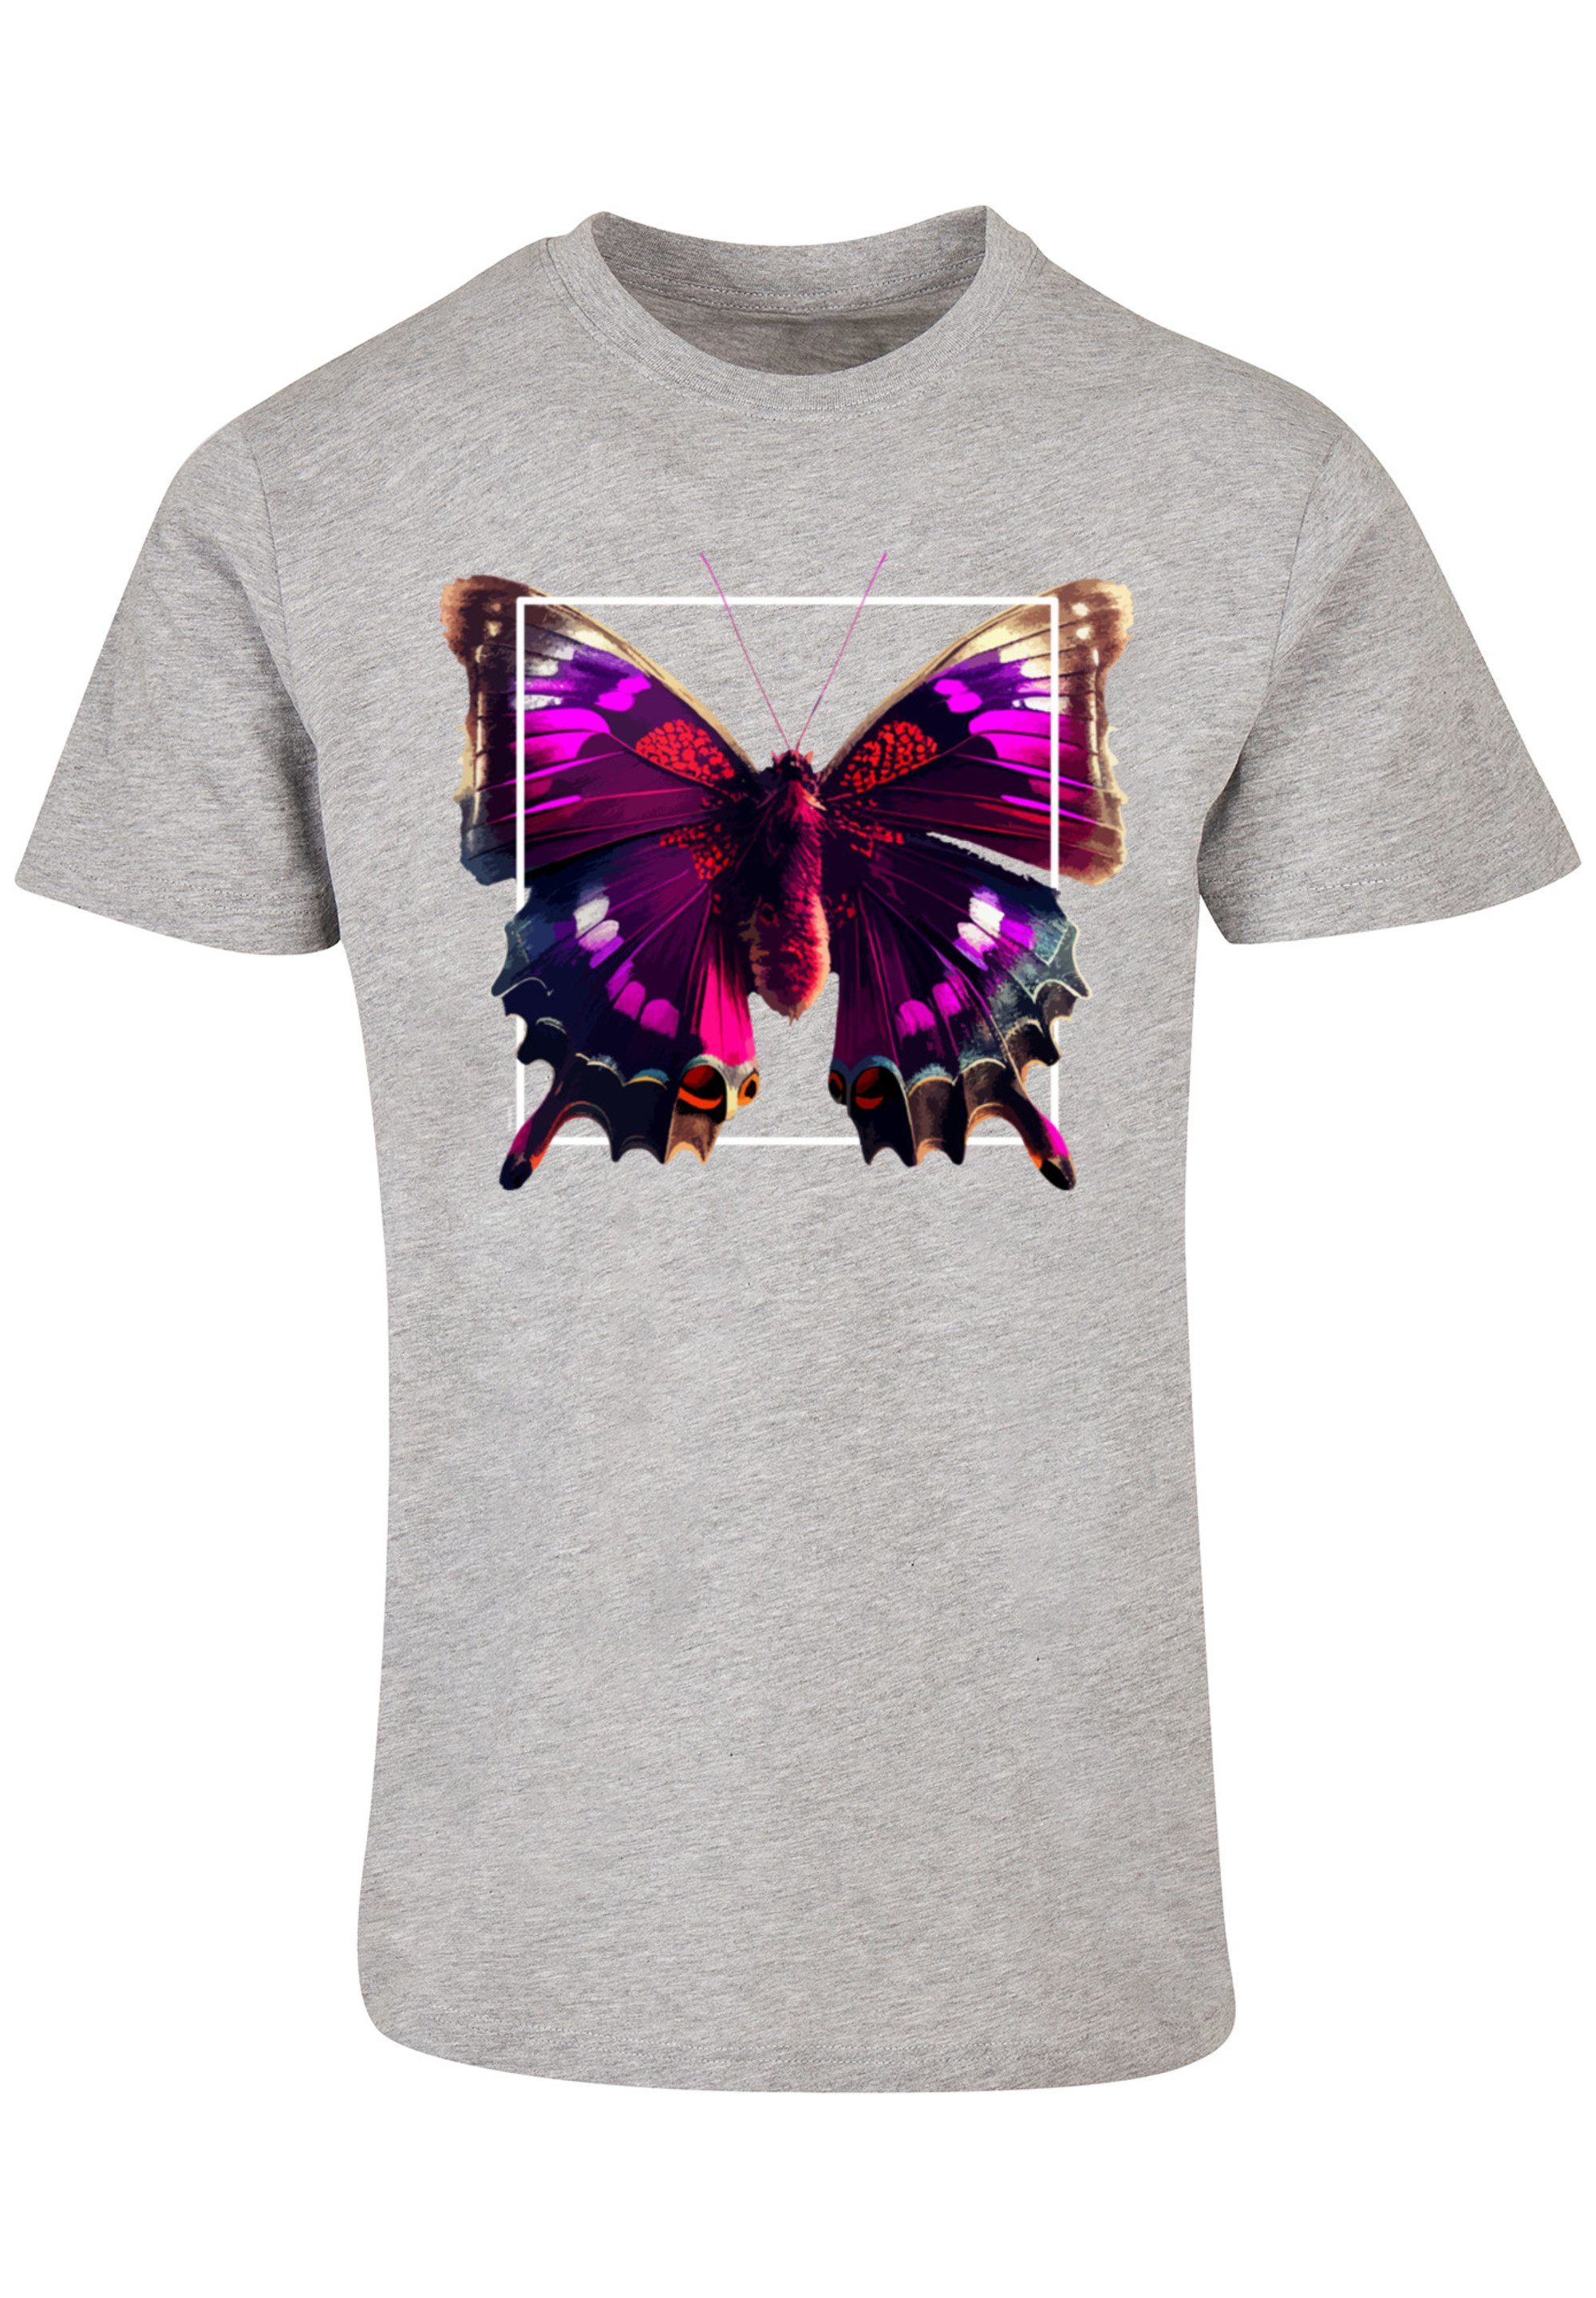 Schmetterling TEE UNISEX Tragekomfort Print, weicher Sehr T-Shirt hohem Pink mit Baumwollstoff F4NT4STIC